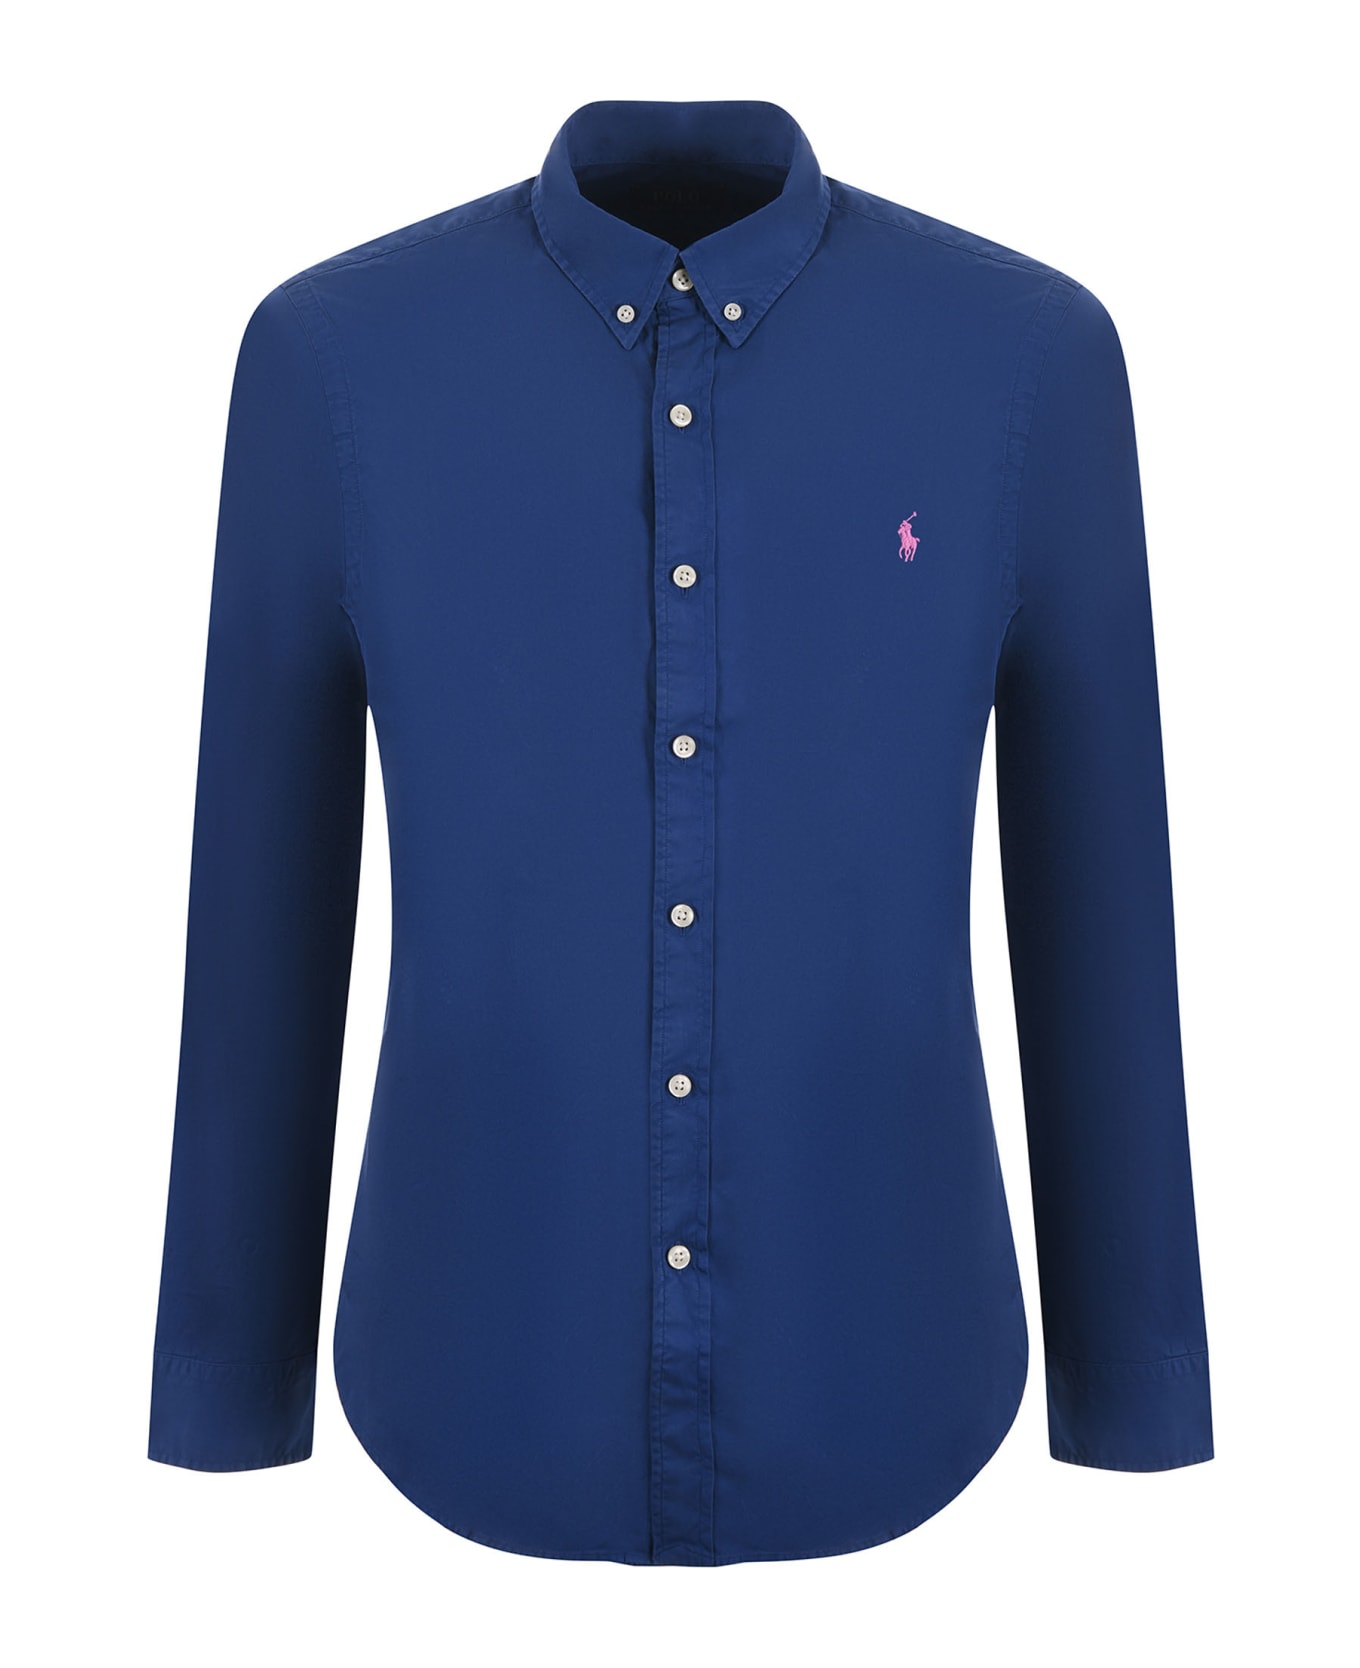 Polo Ralph Lauren Shirt - Blu シャツ